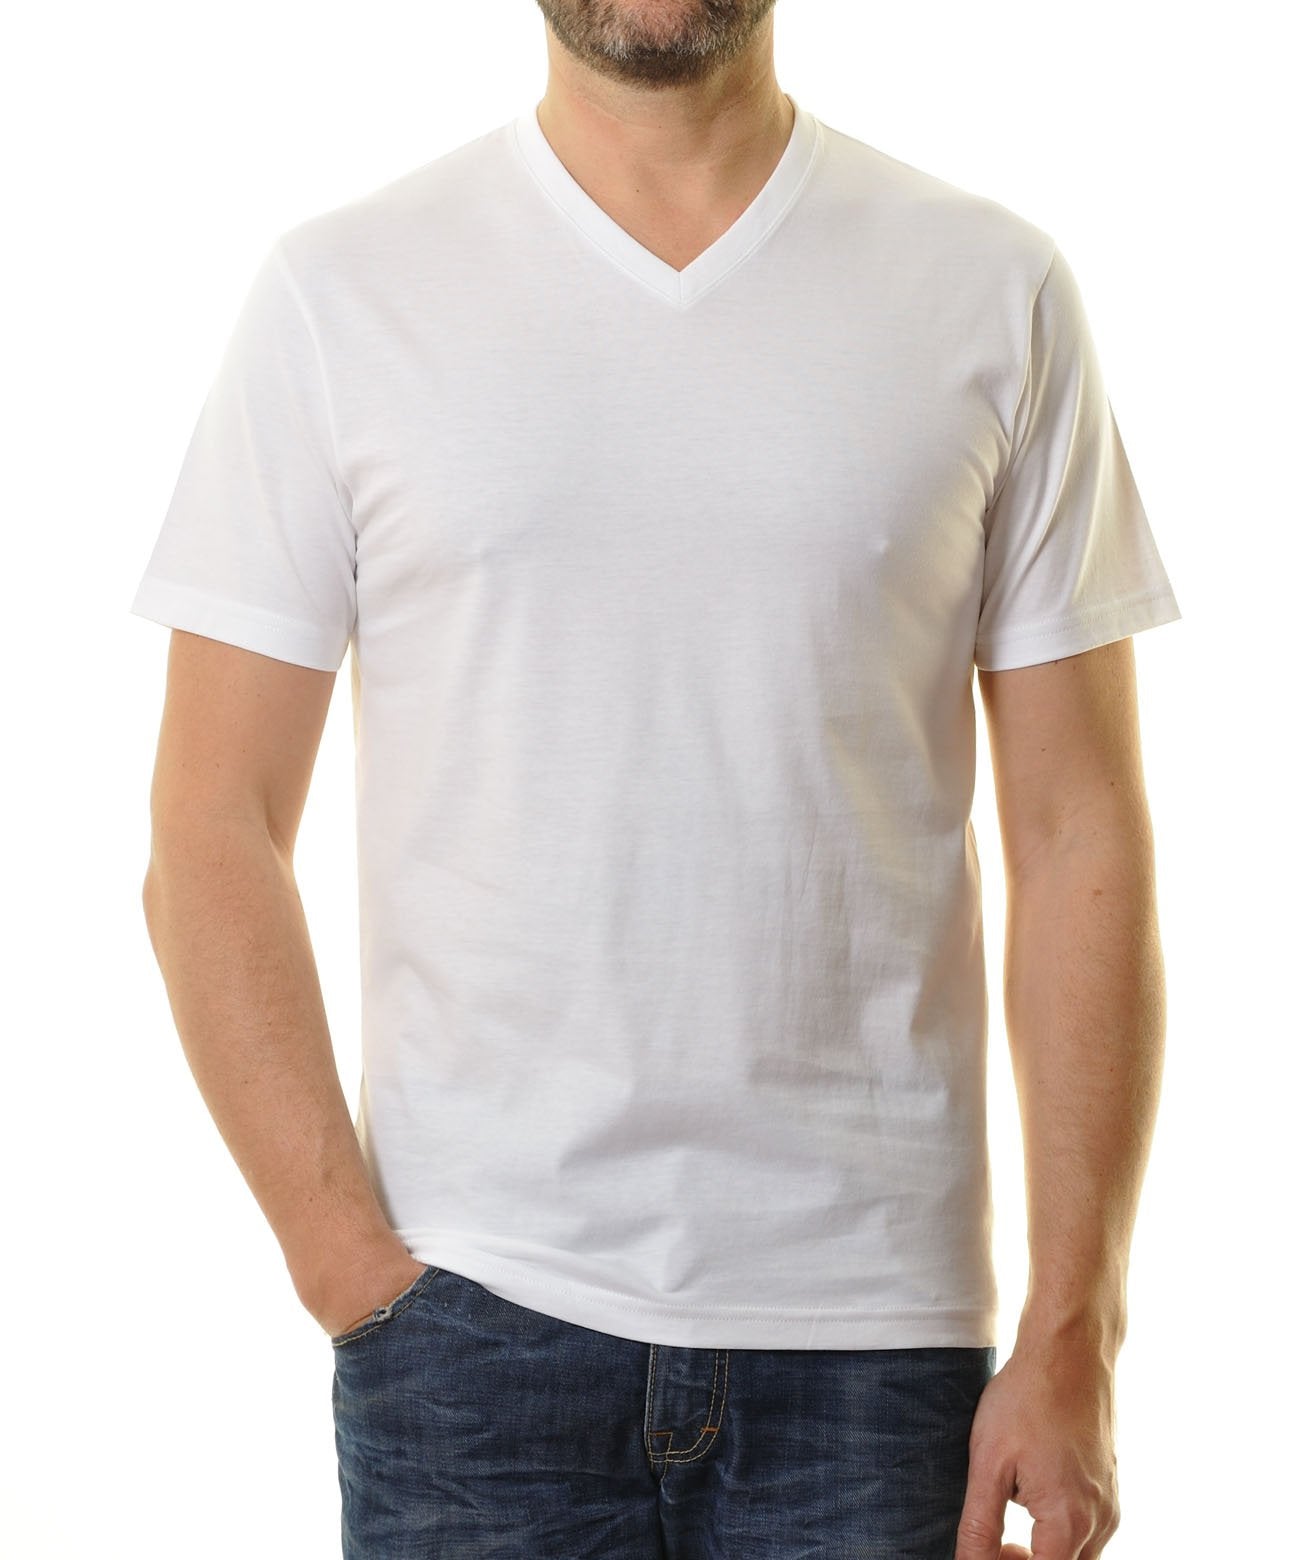 RAGMAN Doppelpack - 2 T-Shirts mit V-Ausschnitt (Weiss)